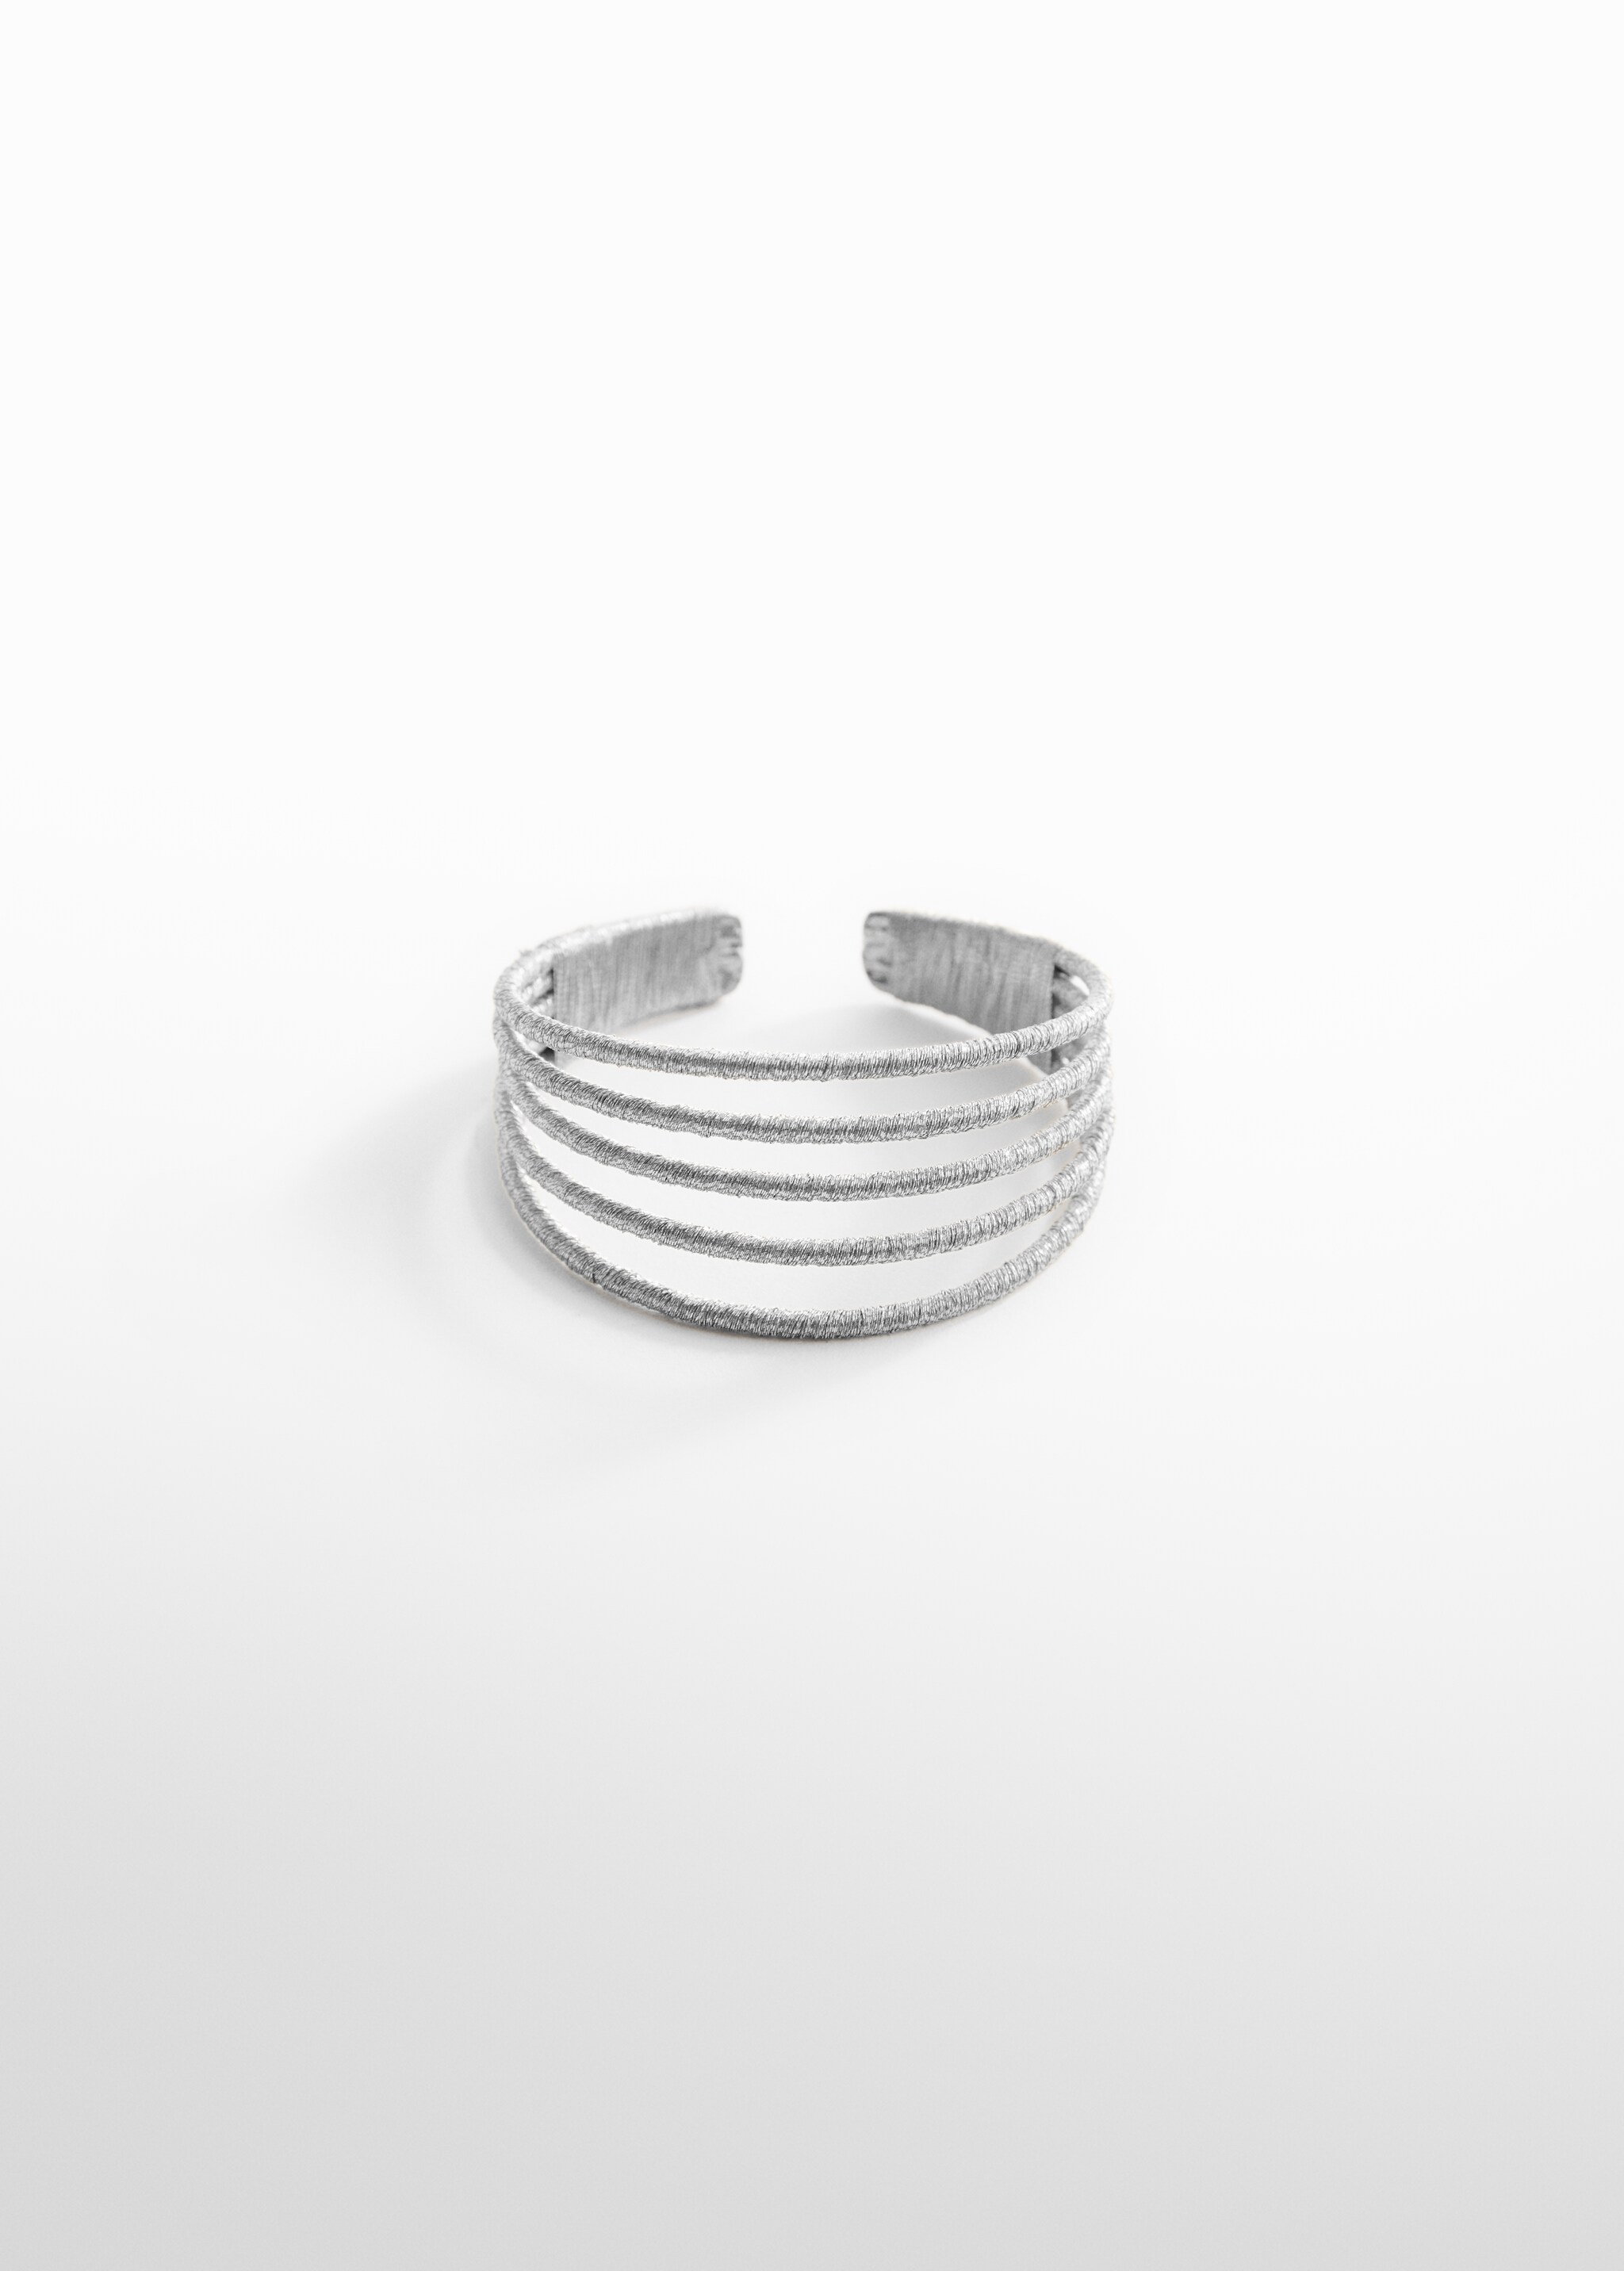 Rigid bracelet - Article without model